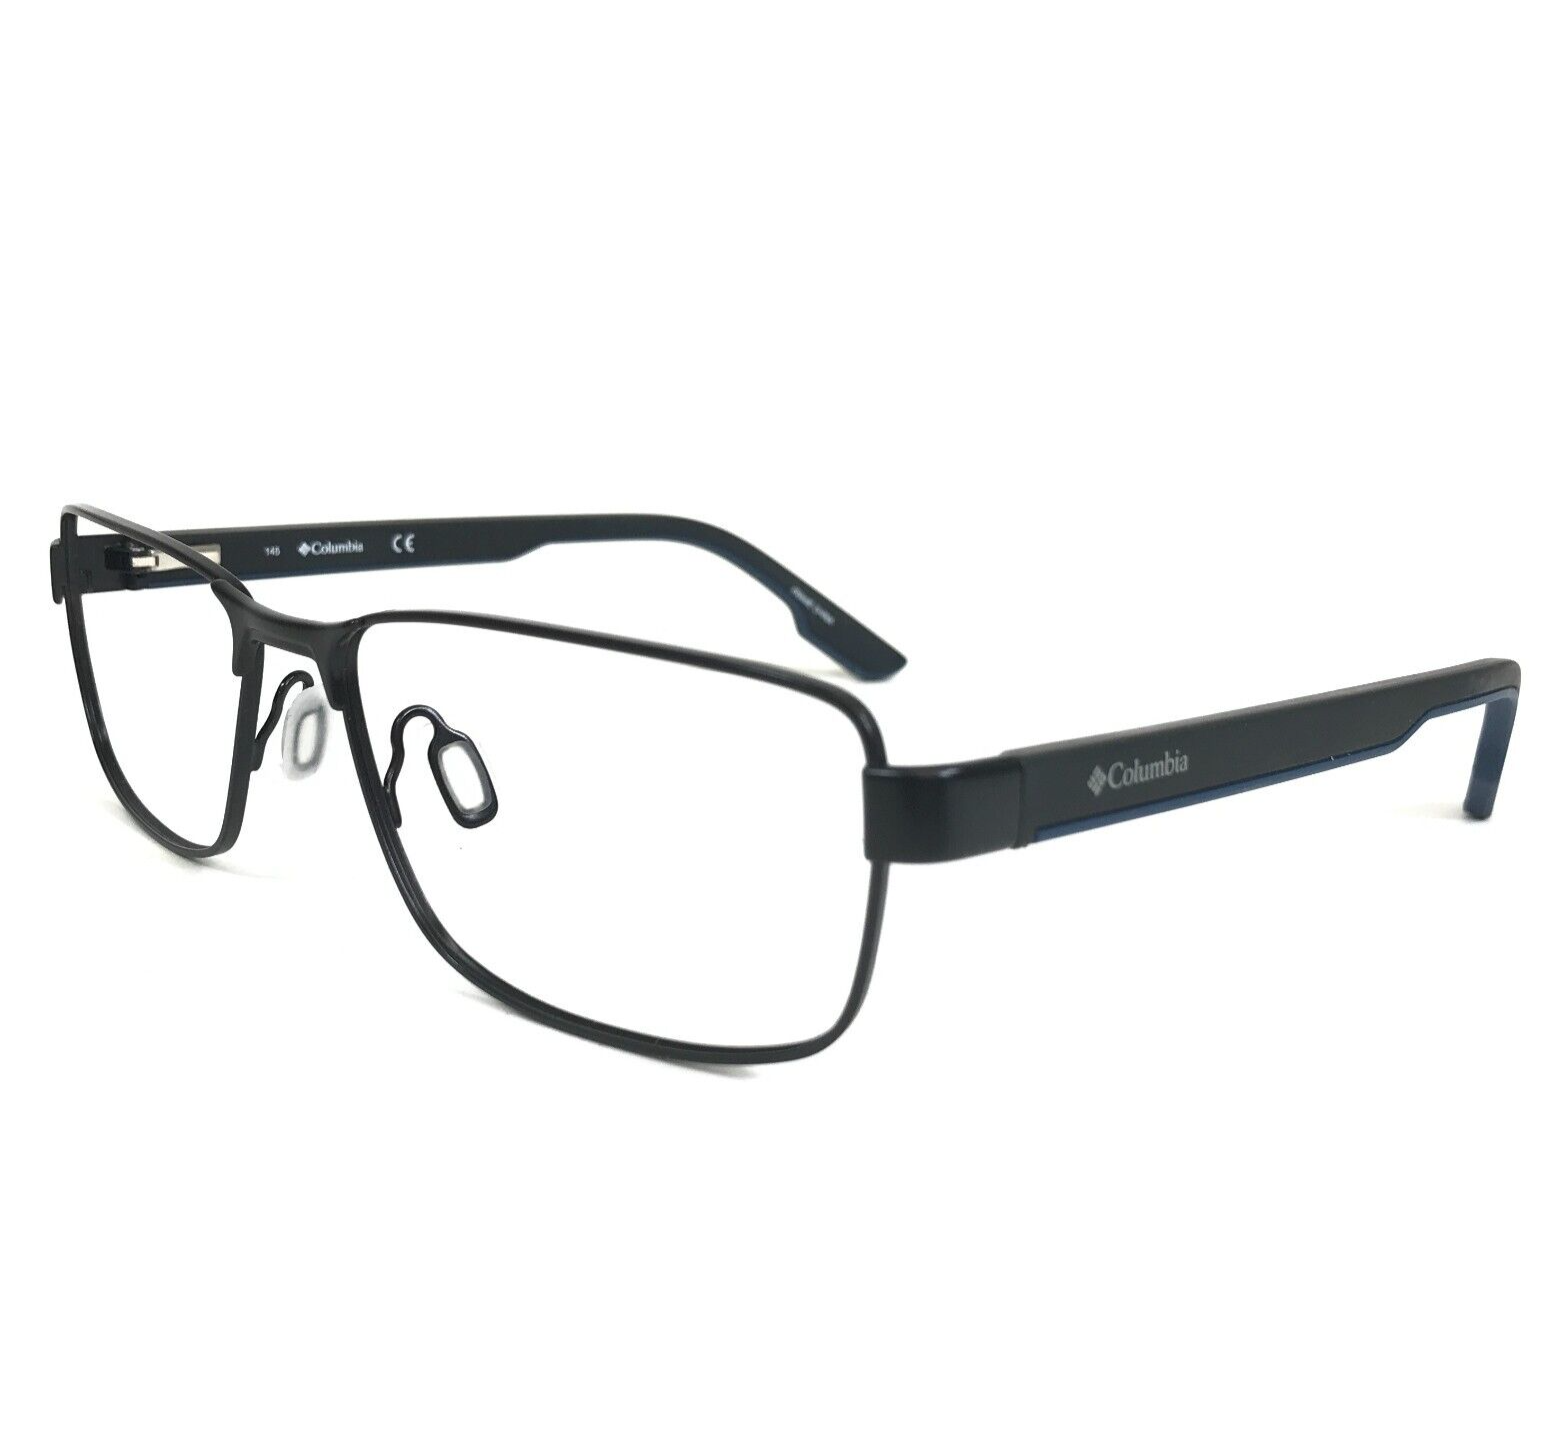 Primary image for Columbia Eyeglasses Frames C3027 002 Black Rectangular Full Rim 58-17-145